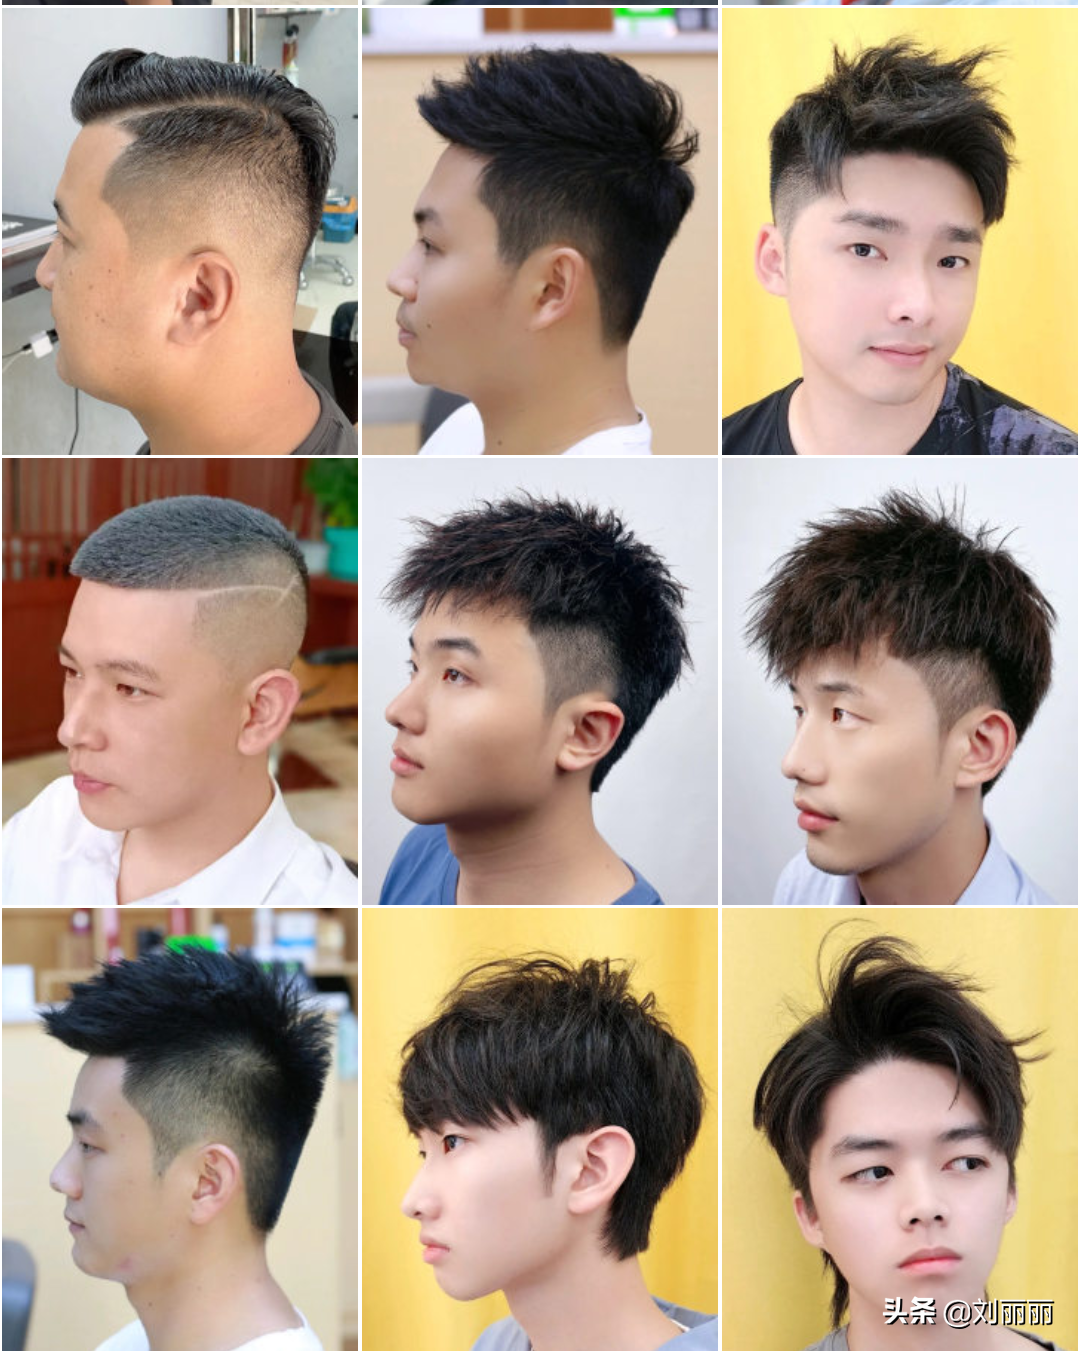 男人是该换换发型了,精选男发100多款任你挑,喜欢哪款剪哪款